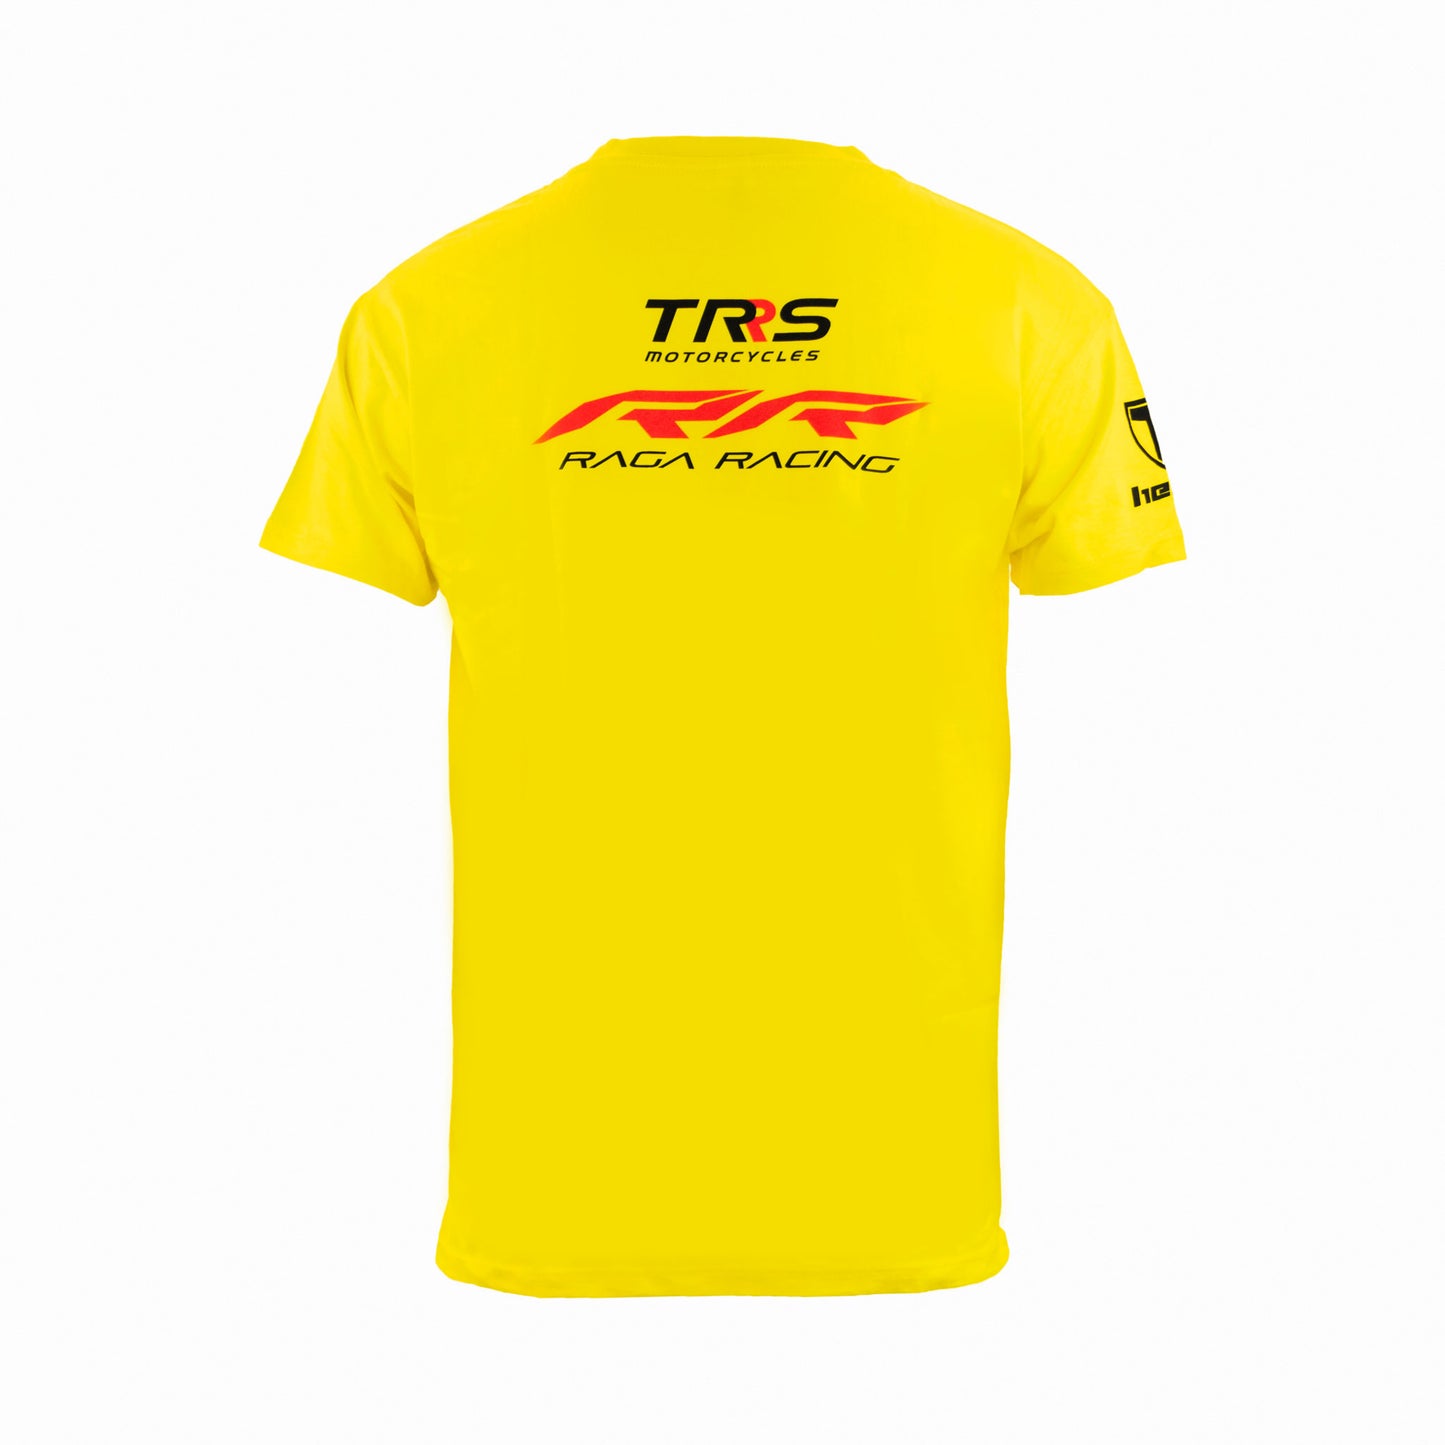 Paddock Yellow T-shirt